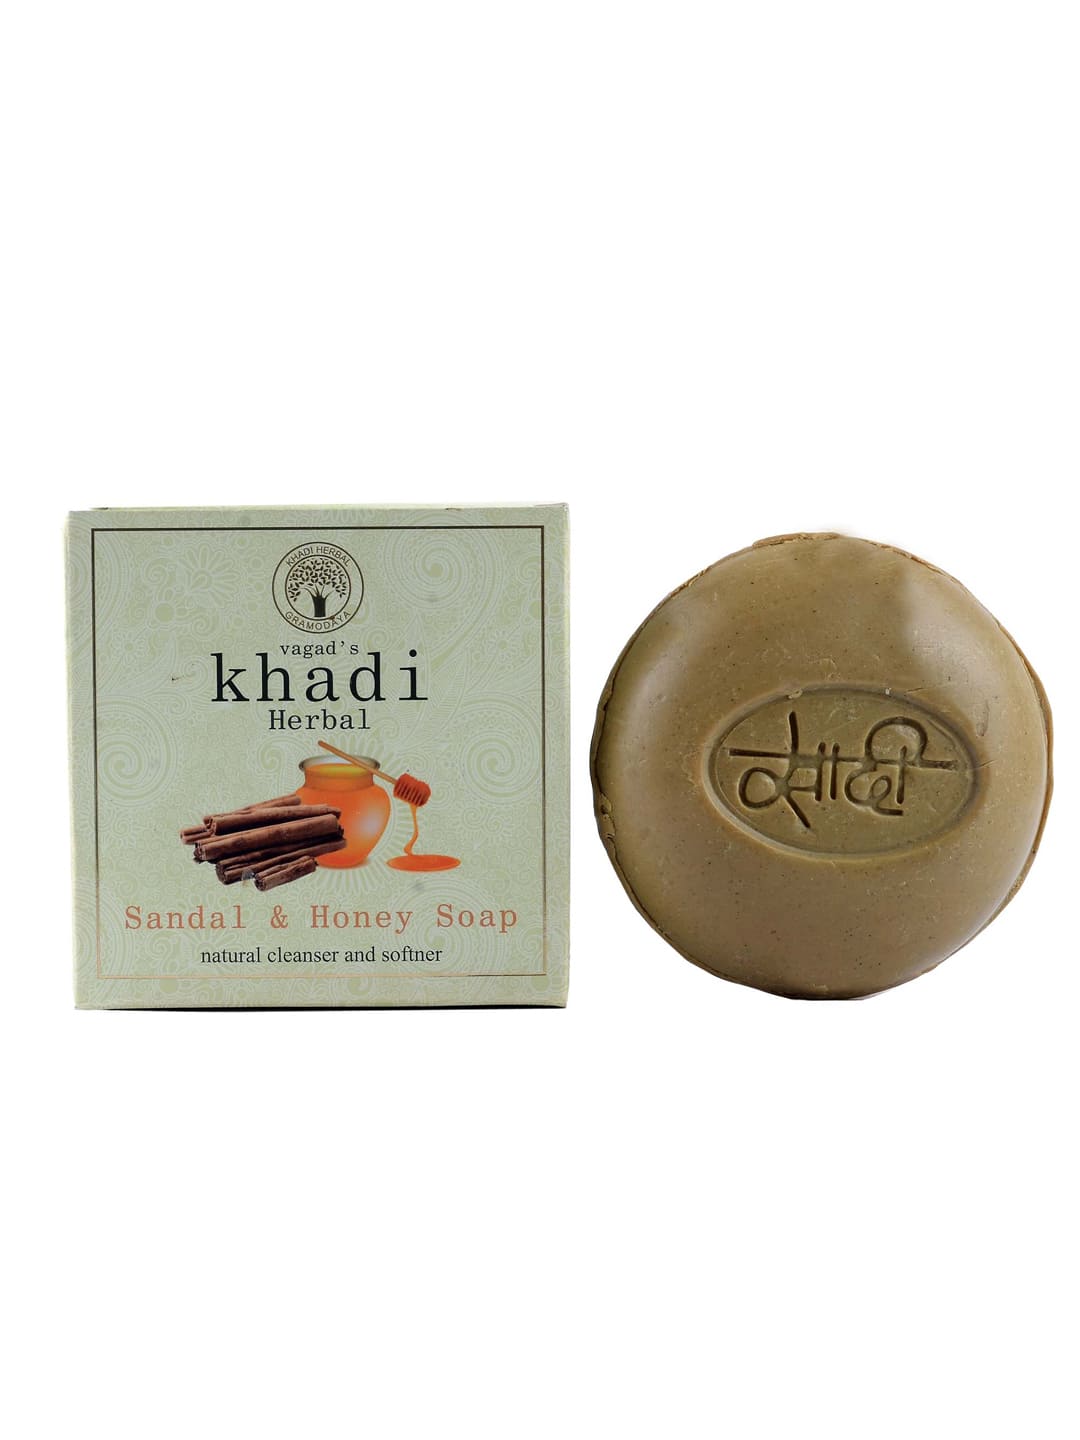 Vagad's Khadi Herbal Sandal Honey Soap Handmade